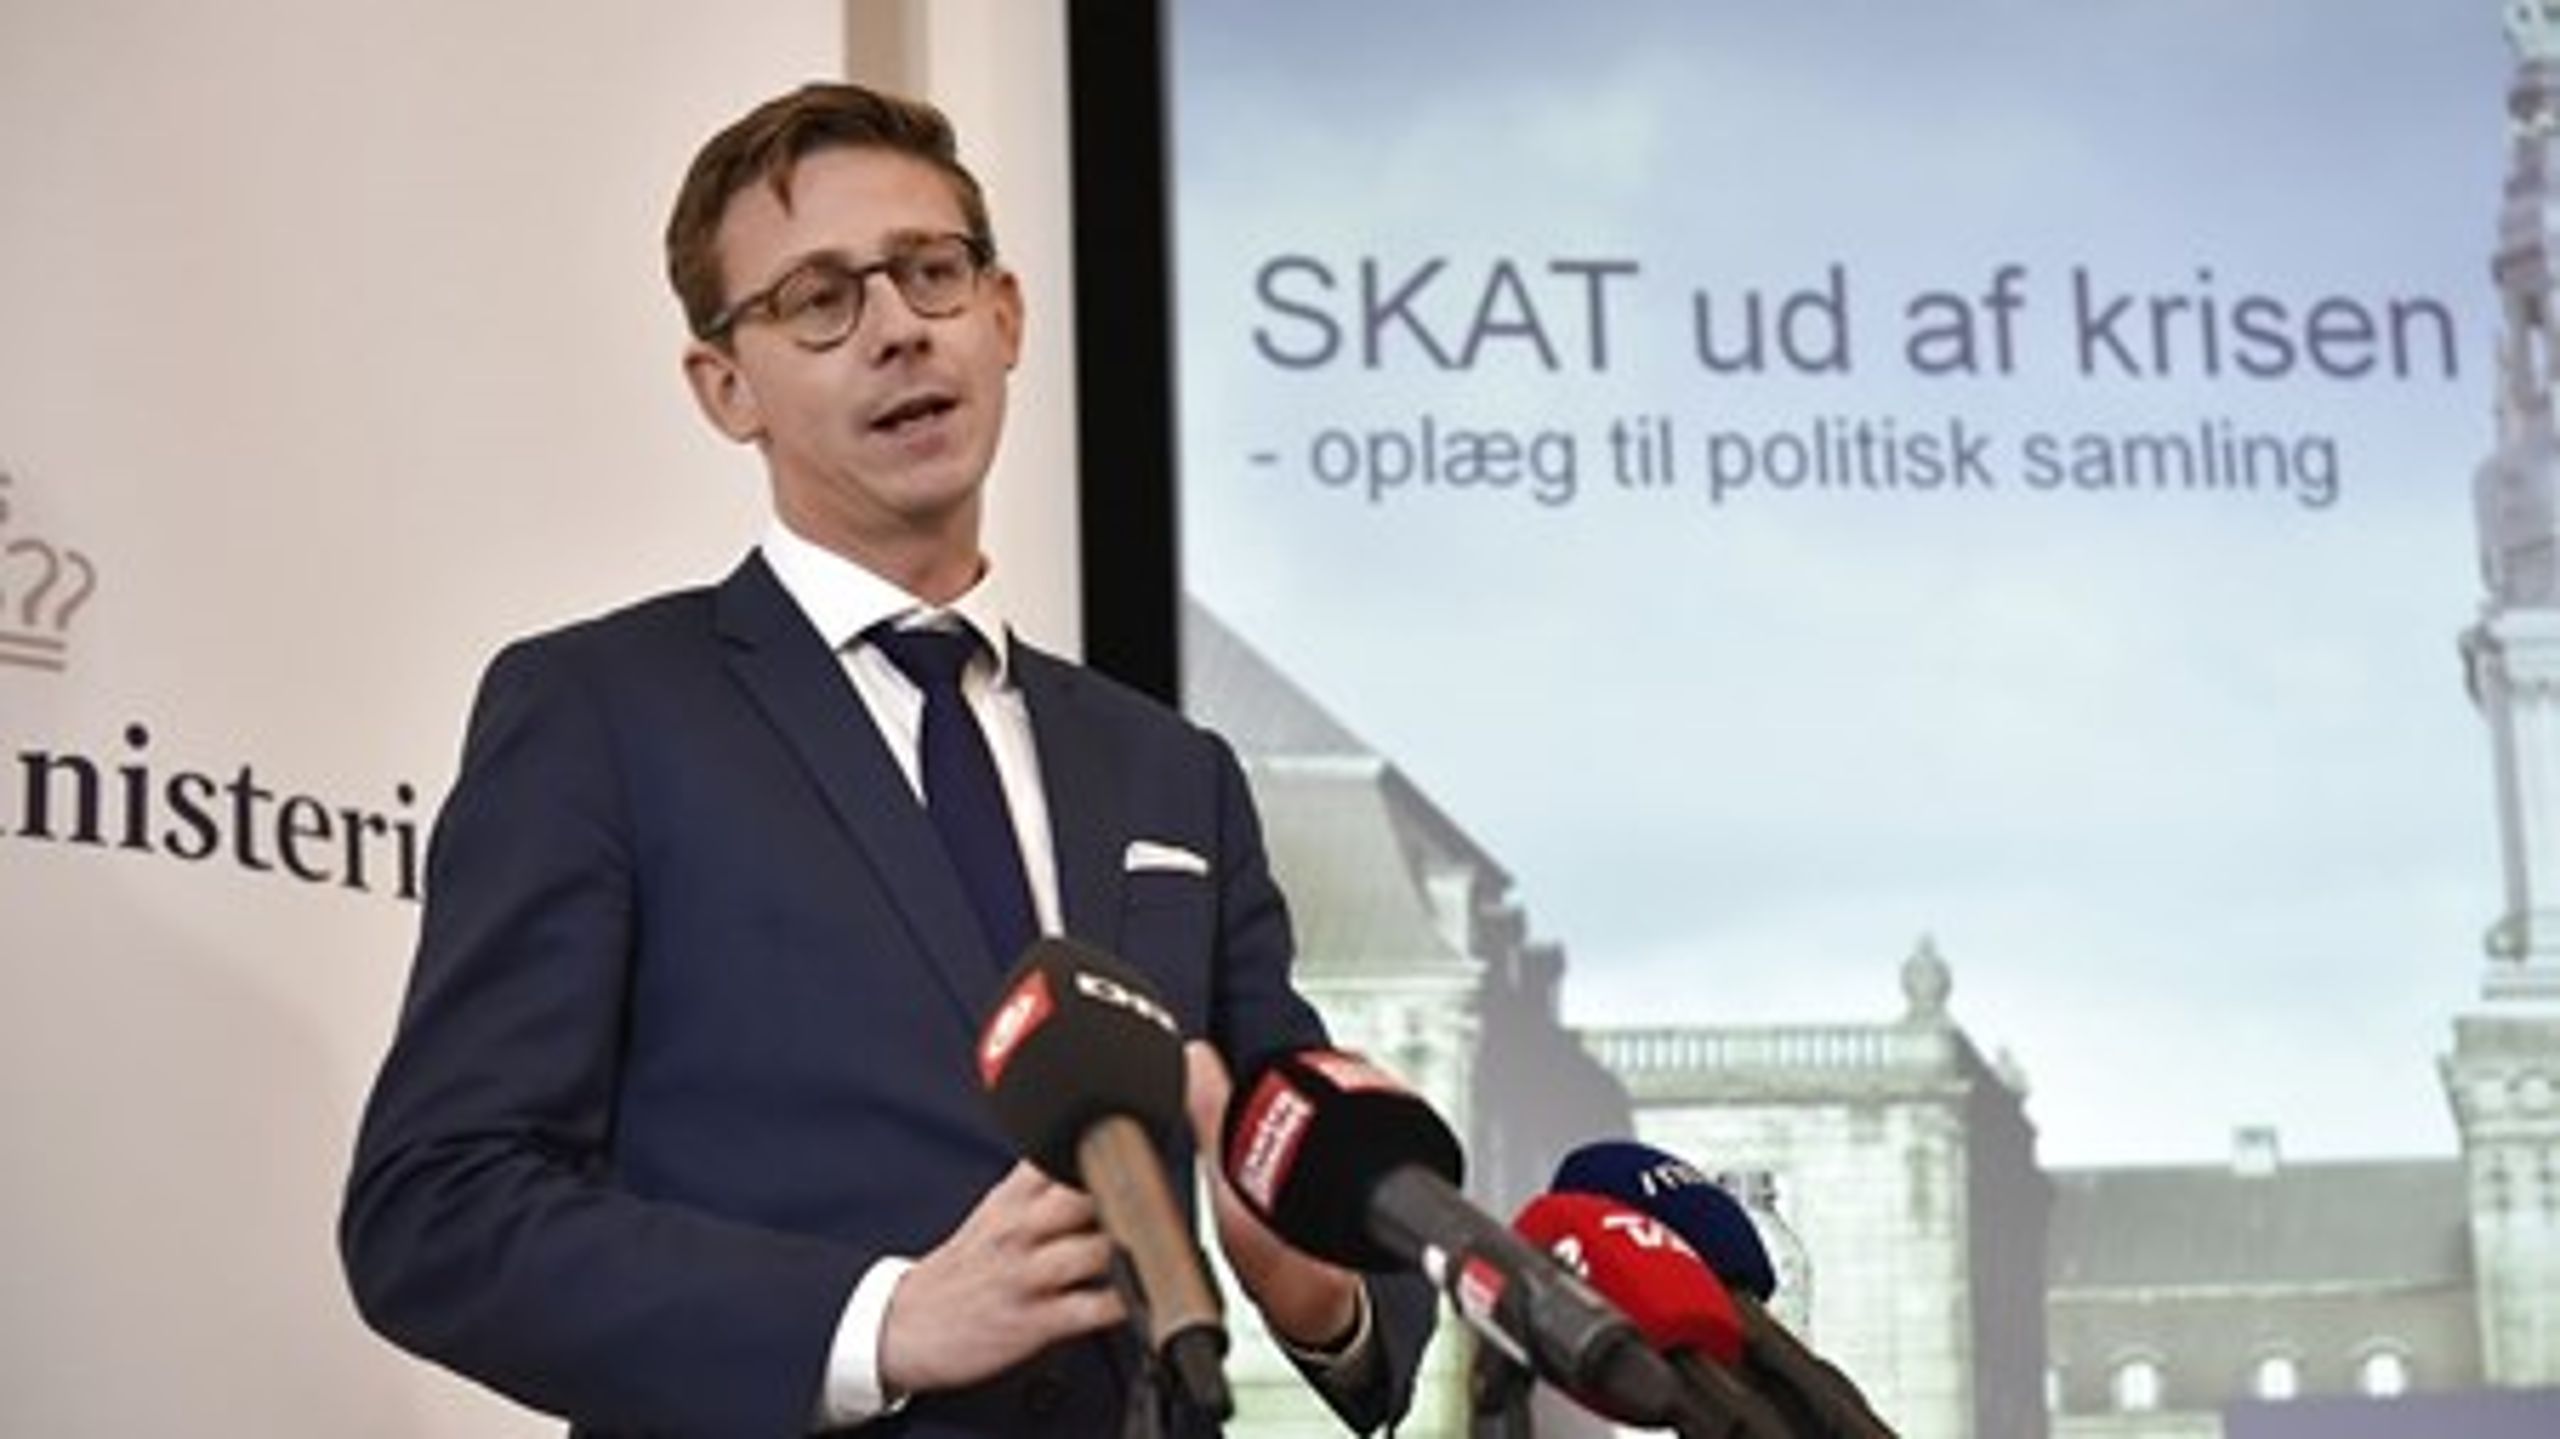 "Jeg tager naturligvis kritikken alvorligt," lyder det fra skatteminister Karsten Lauritzen, efter Skatteministeriet har fået skarp kritik fra Statsrevisorerne.&nbsp;